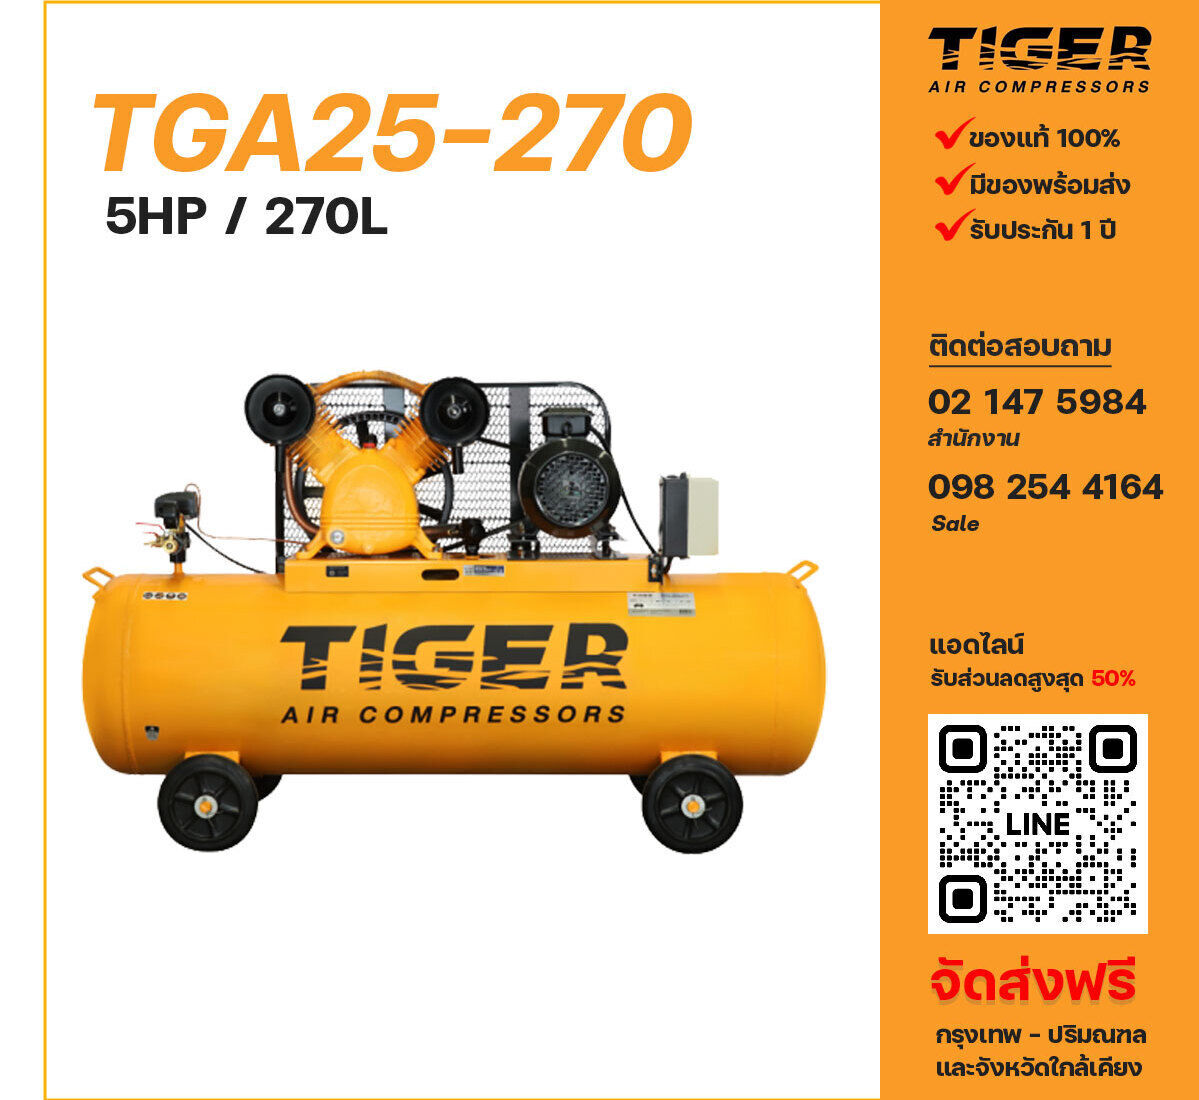 ปั๊มลมไทเกอร์ TIGER TGA25-270 380V ปั๊มลมลูกสูบ ขนาด 2 สูบ 5 แรงม้า 270 ลิตร TIGER พร้อมมอเตอร์ ไฟ 380V ส่งฟรี กรุงเทพฯ-ปริมณฑล รับประกัน 1 ปี